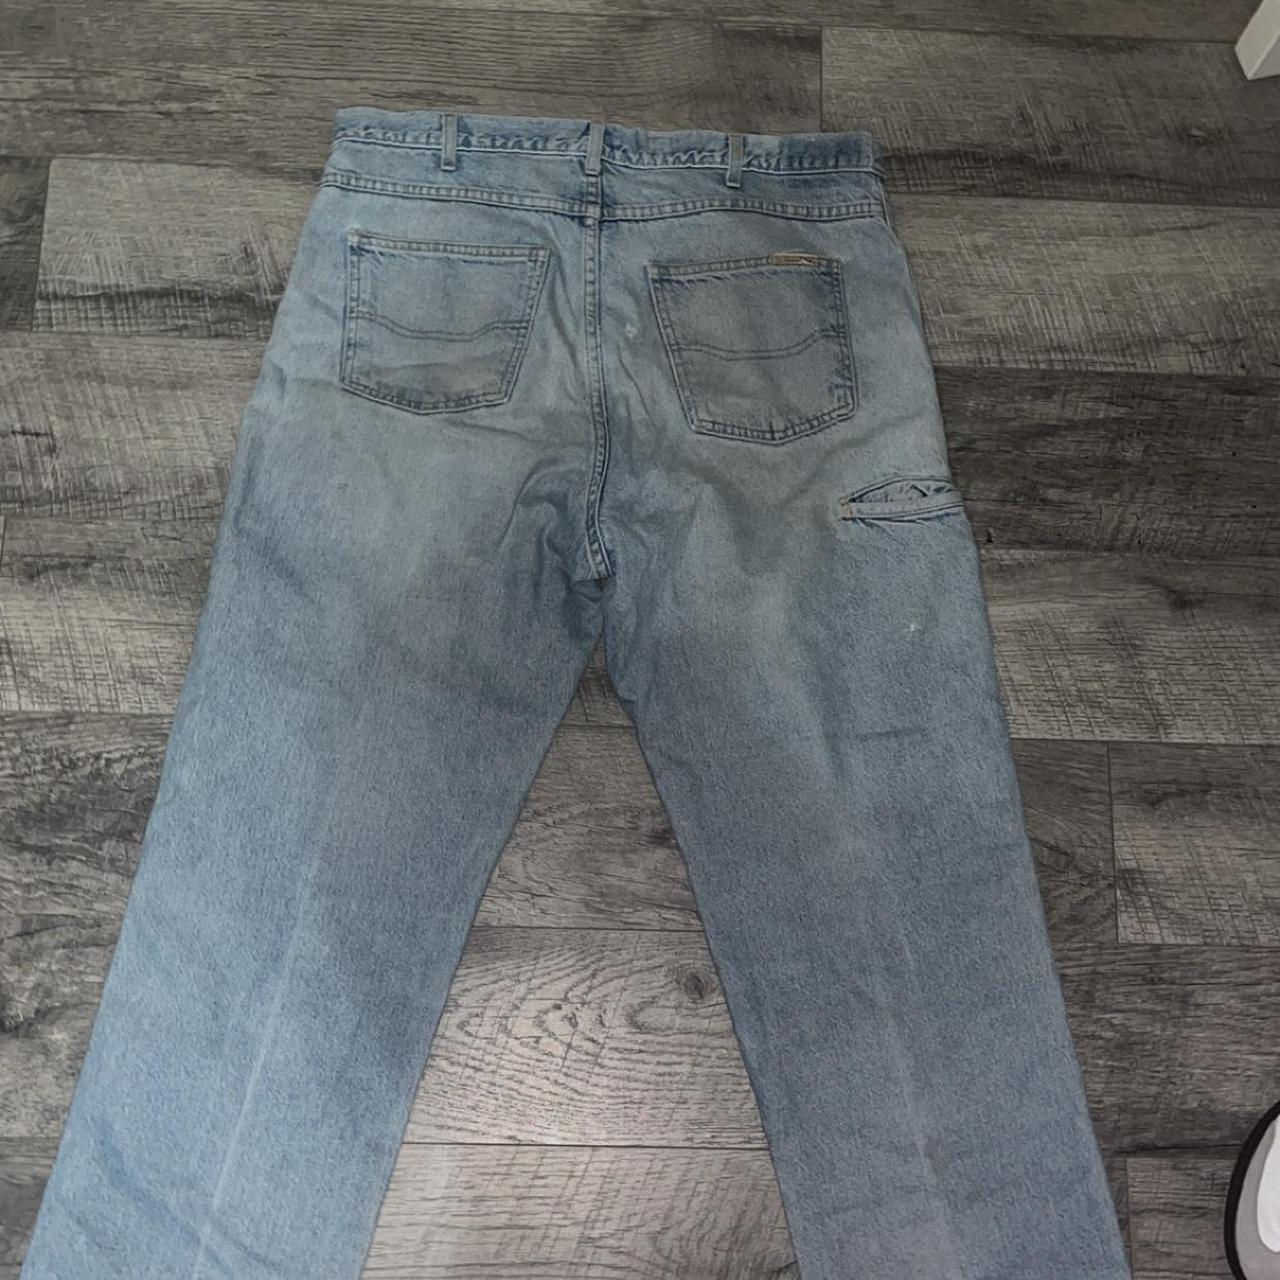 Vintage dickies double knee jeans Straight fit(kinda... - Depop